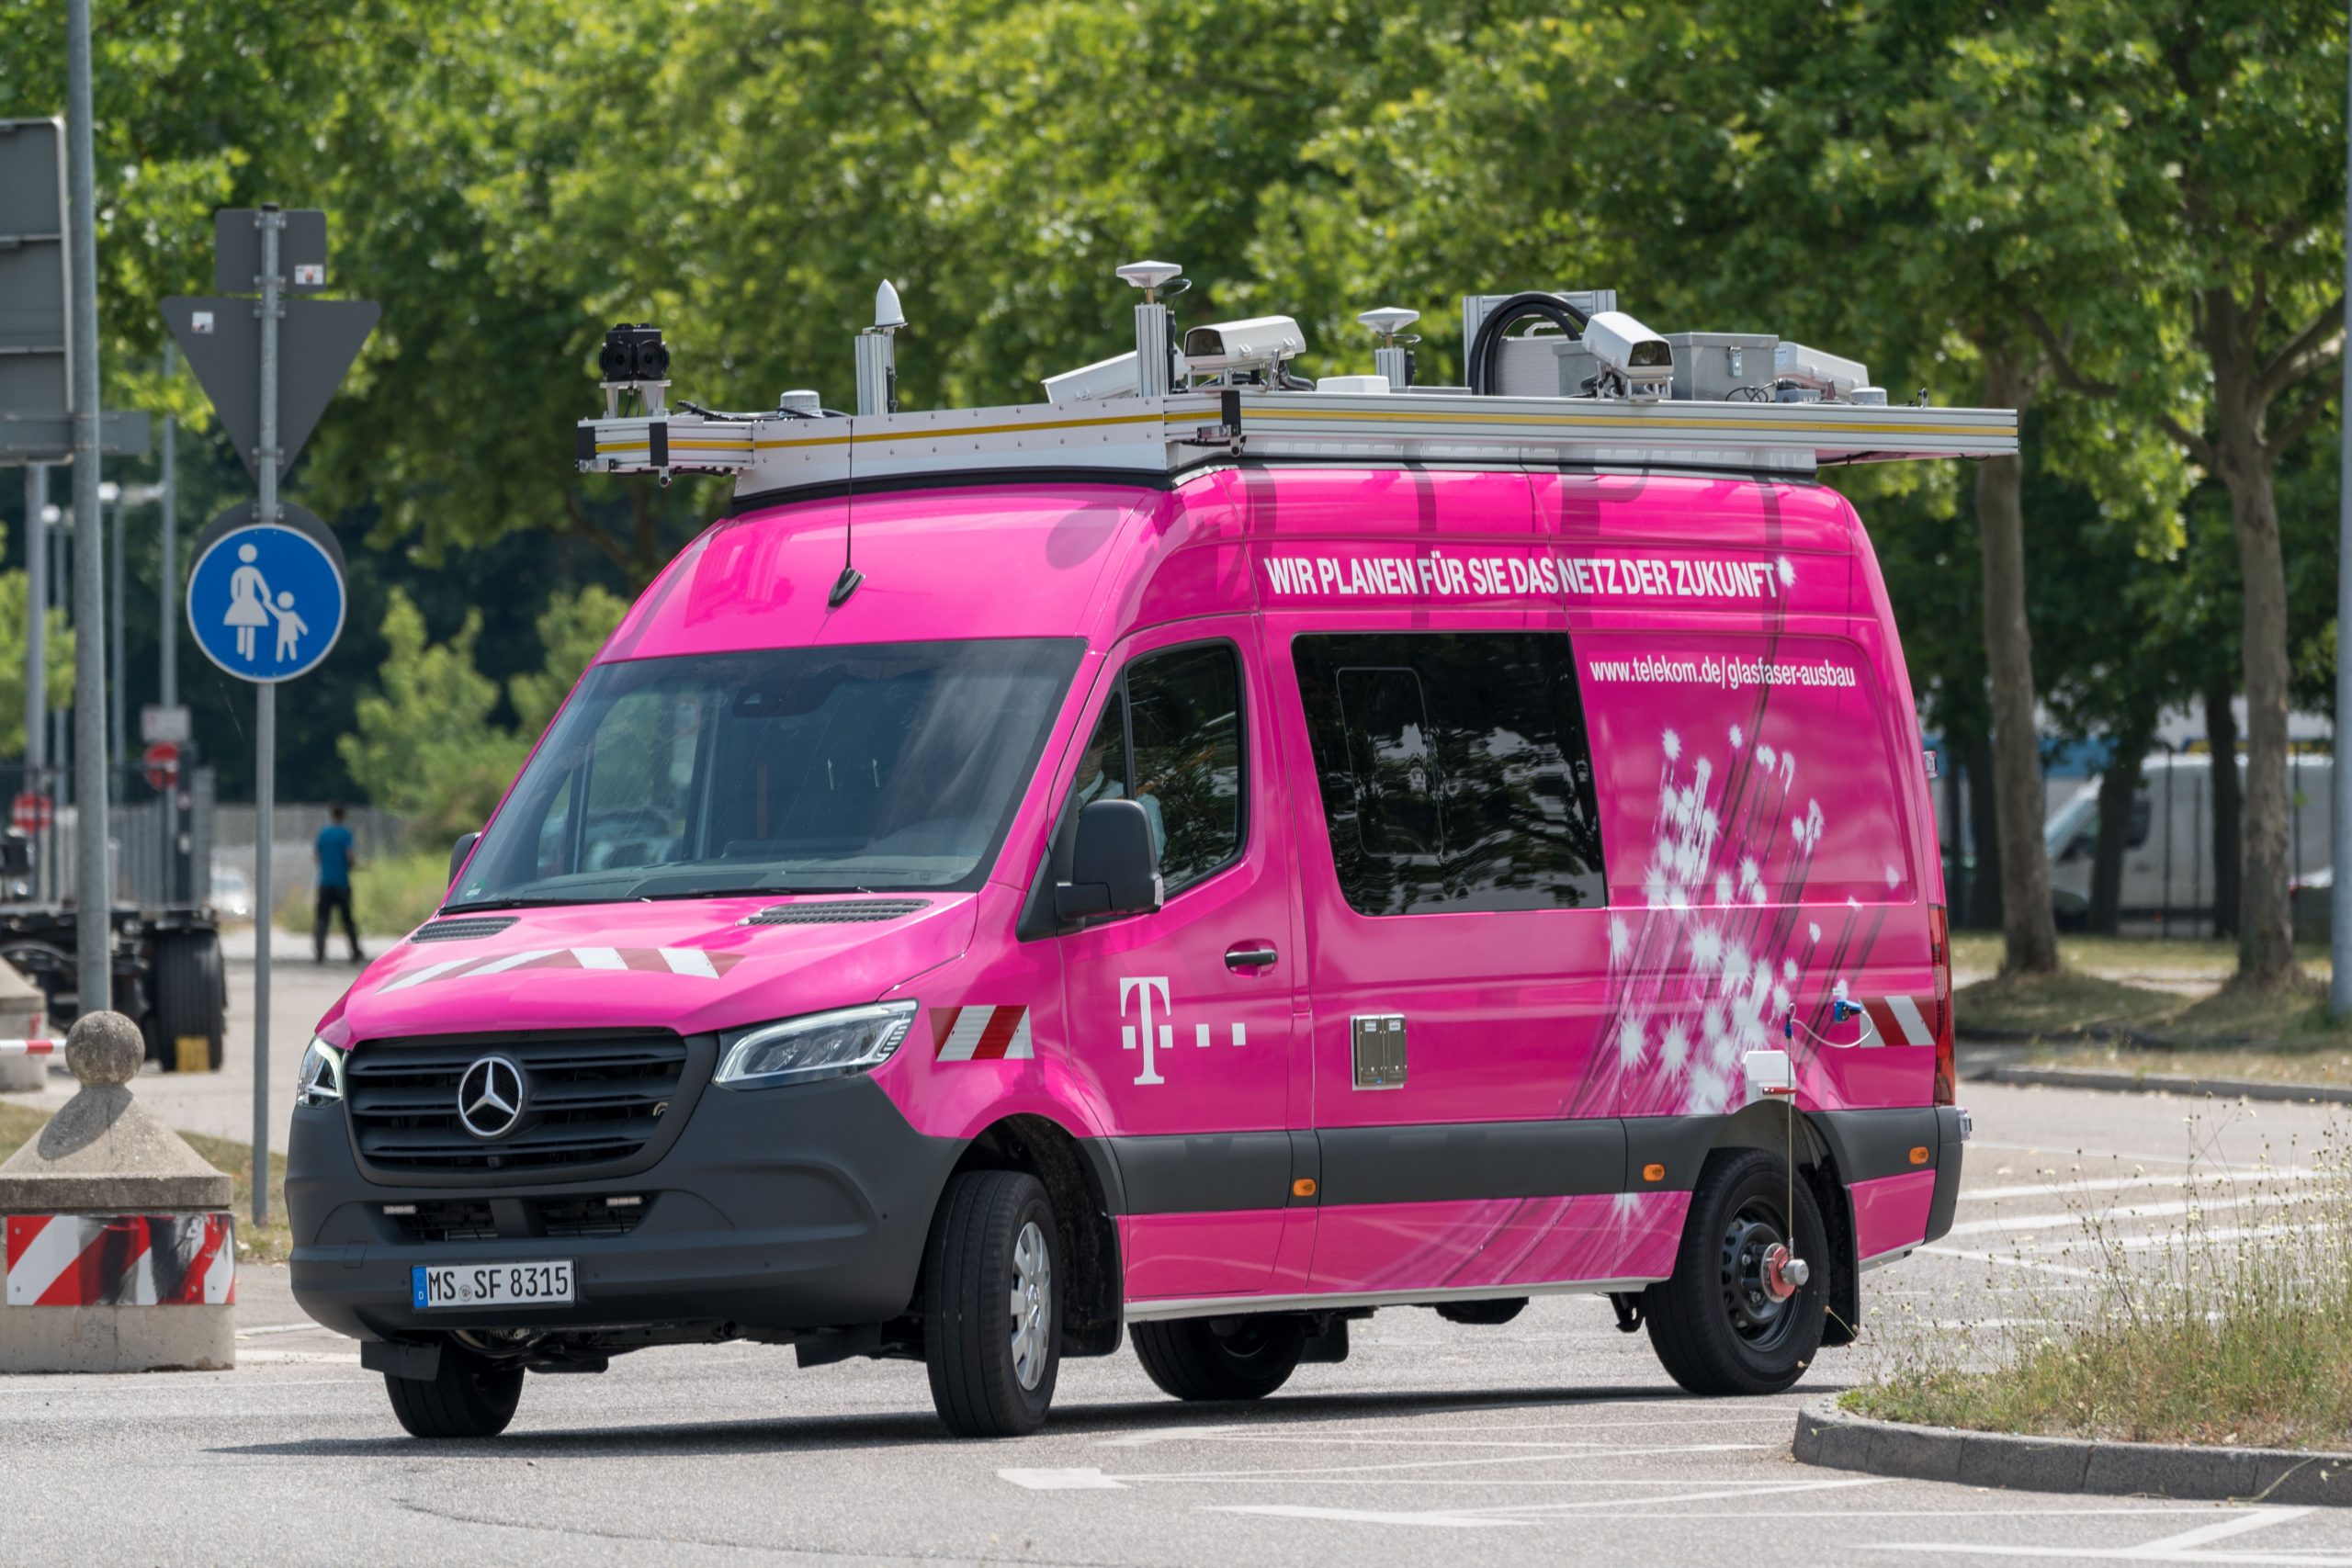 Schenk mir Dein Foto! T-Cars der Telekom im Einsatz für den Glasfaserausbau  - Gigabit Region Stuttgart